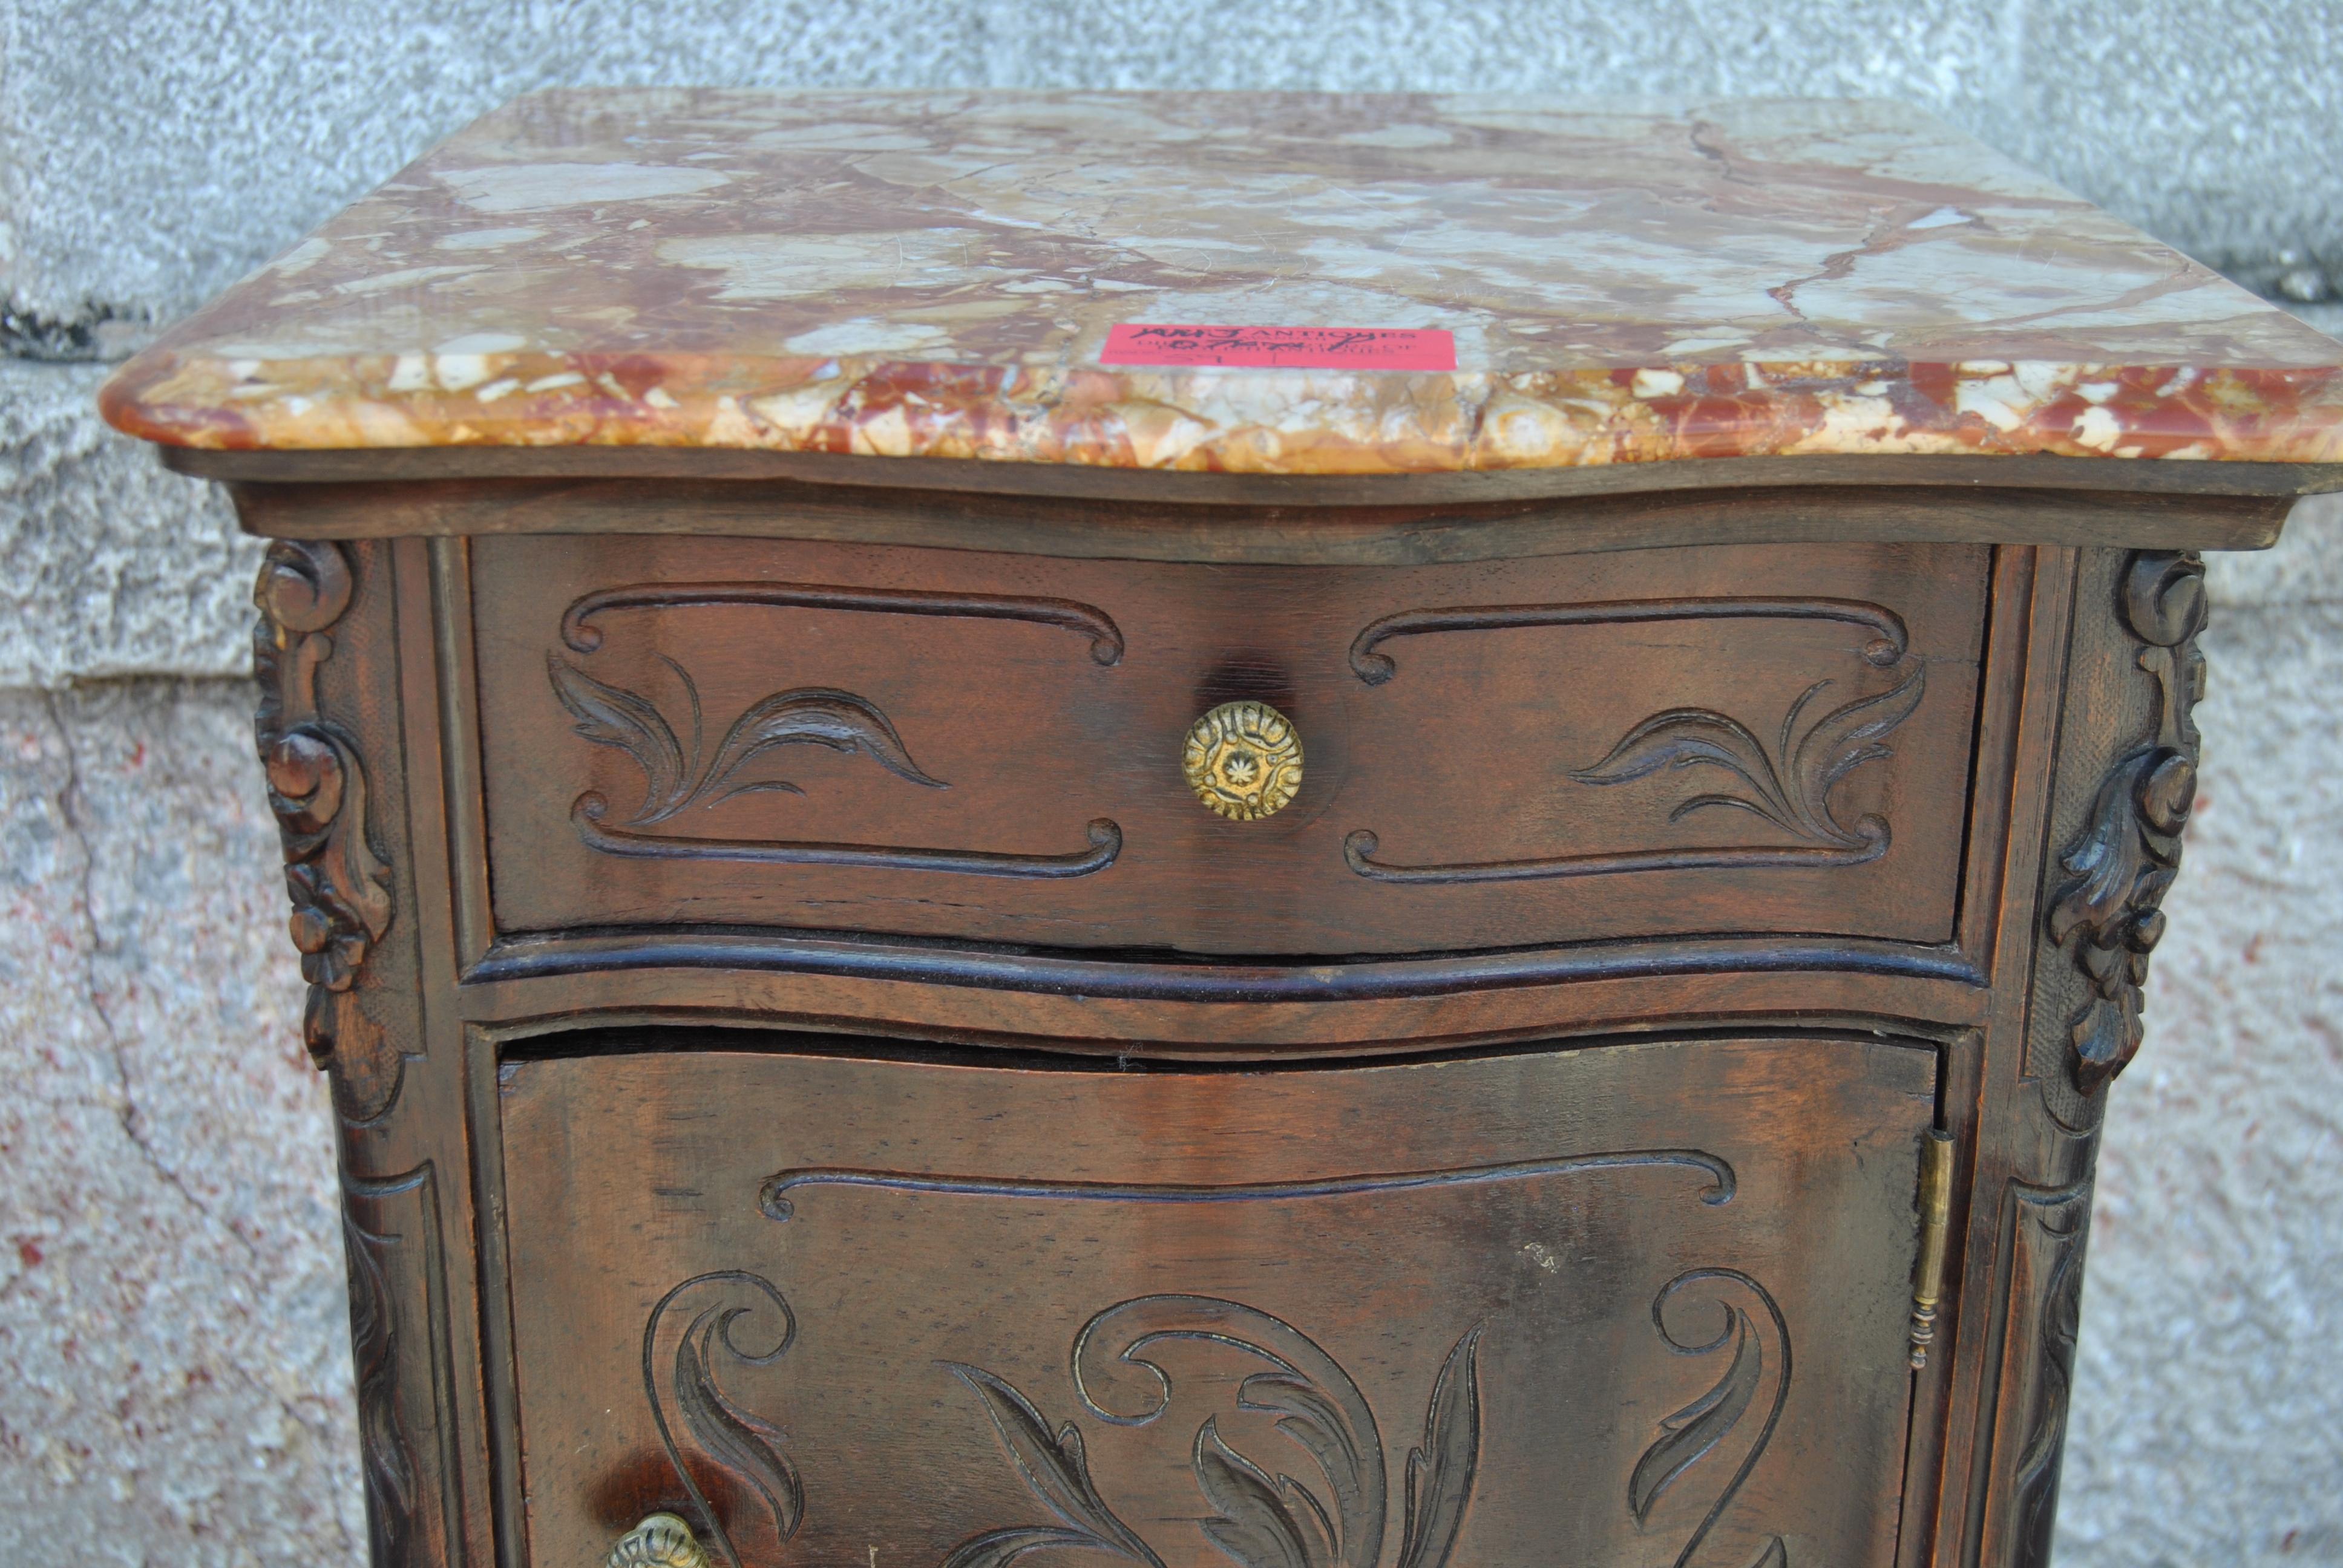 Dies ist ein Nachttisch / Beistelltisch / Schrank in Frankreich gemacht:: um 1900. Es hat eine schöne mehrfarbige Marmorplatte. Alle 4 Seiten der Murmel haben einen schön geformten und profilierten Rand. Die Vorderseite des Schrankes ist